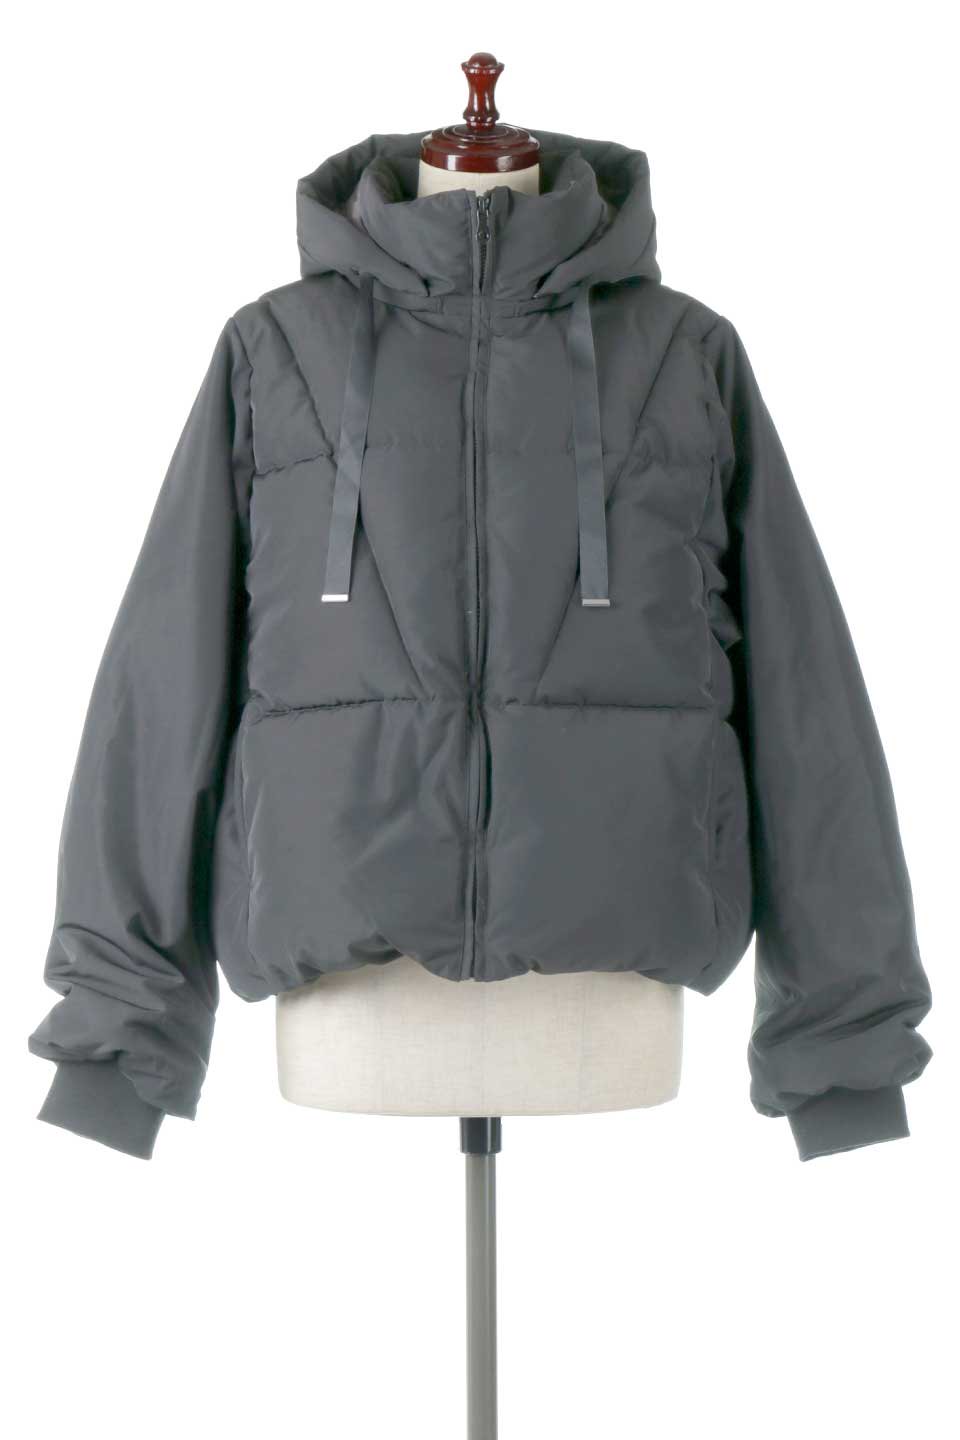 SORONAShortPufferJacketソロナ中綿・ショートジャケット大人カジュアルに最適な海外ファッションのothers（その他インポートアイテム）のアウターやジャケット。ボリューミーだけど着ぶくれしない。デュポン社の新素材を使用した中綿ジャケット。/main-10